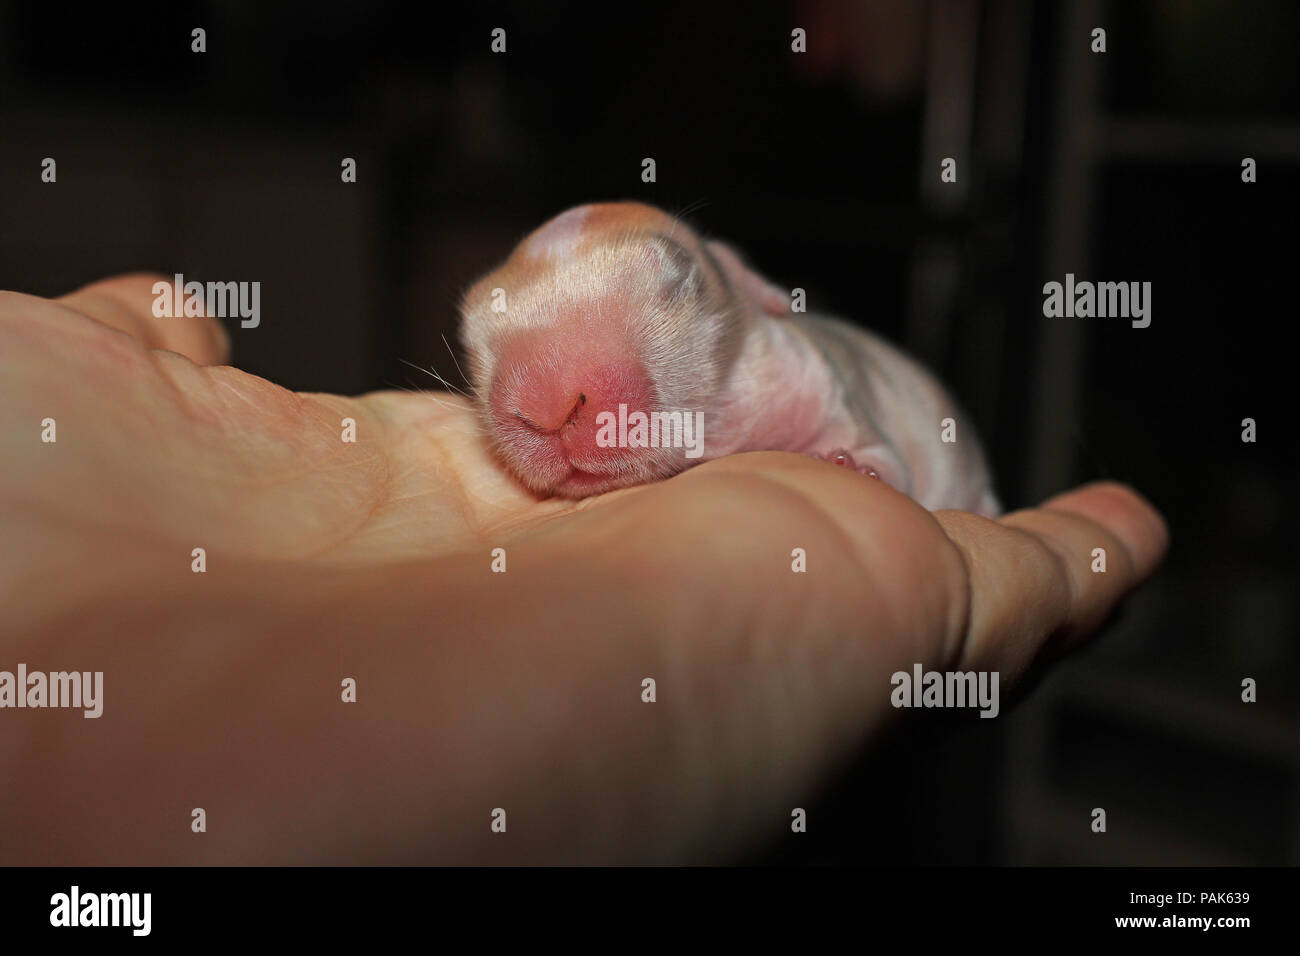 New Born Baby bunny Hasen Set Mini lop Stockfoto